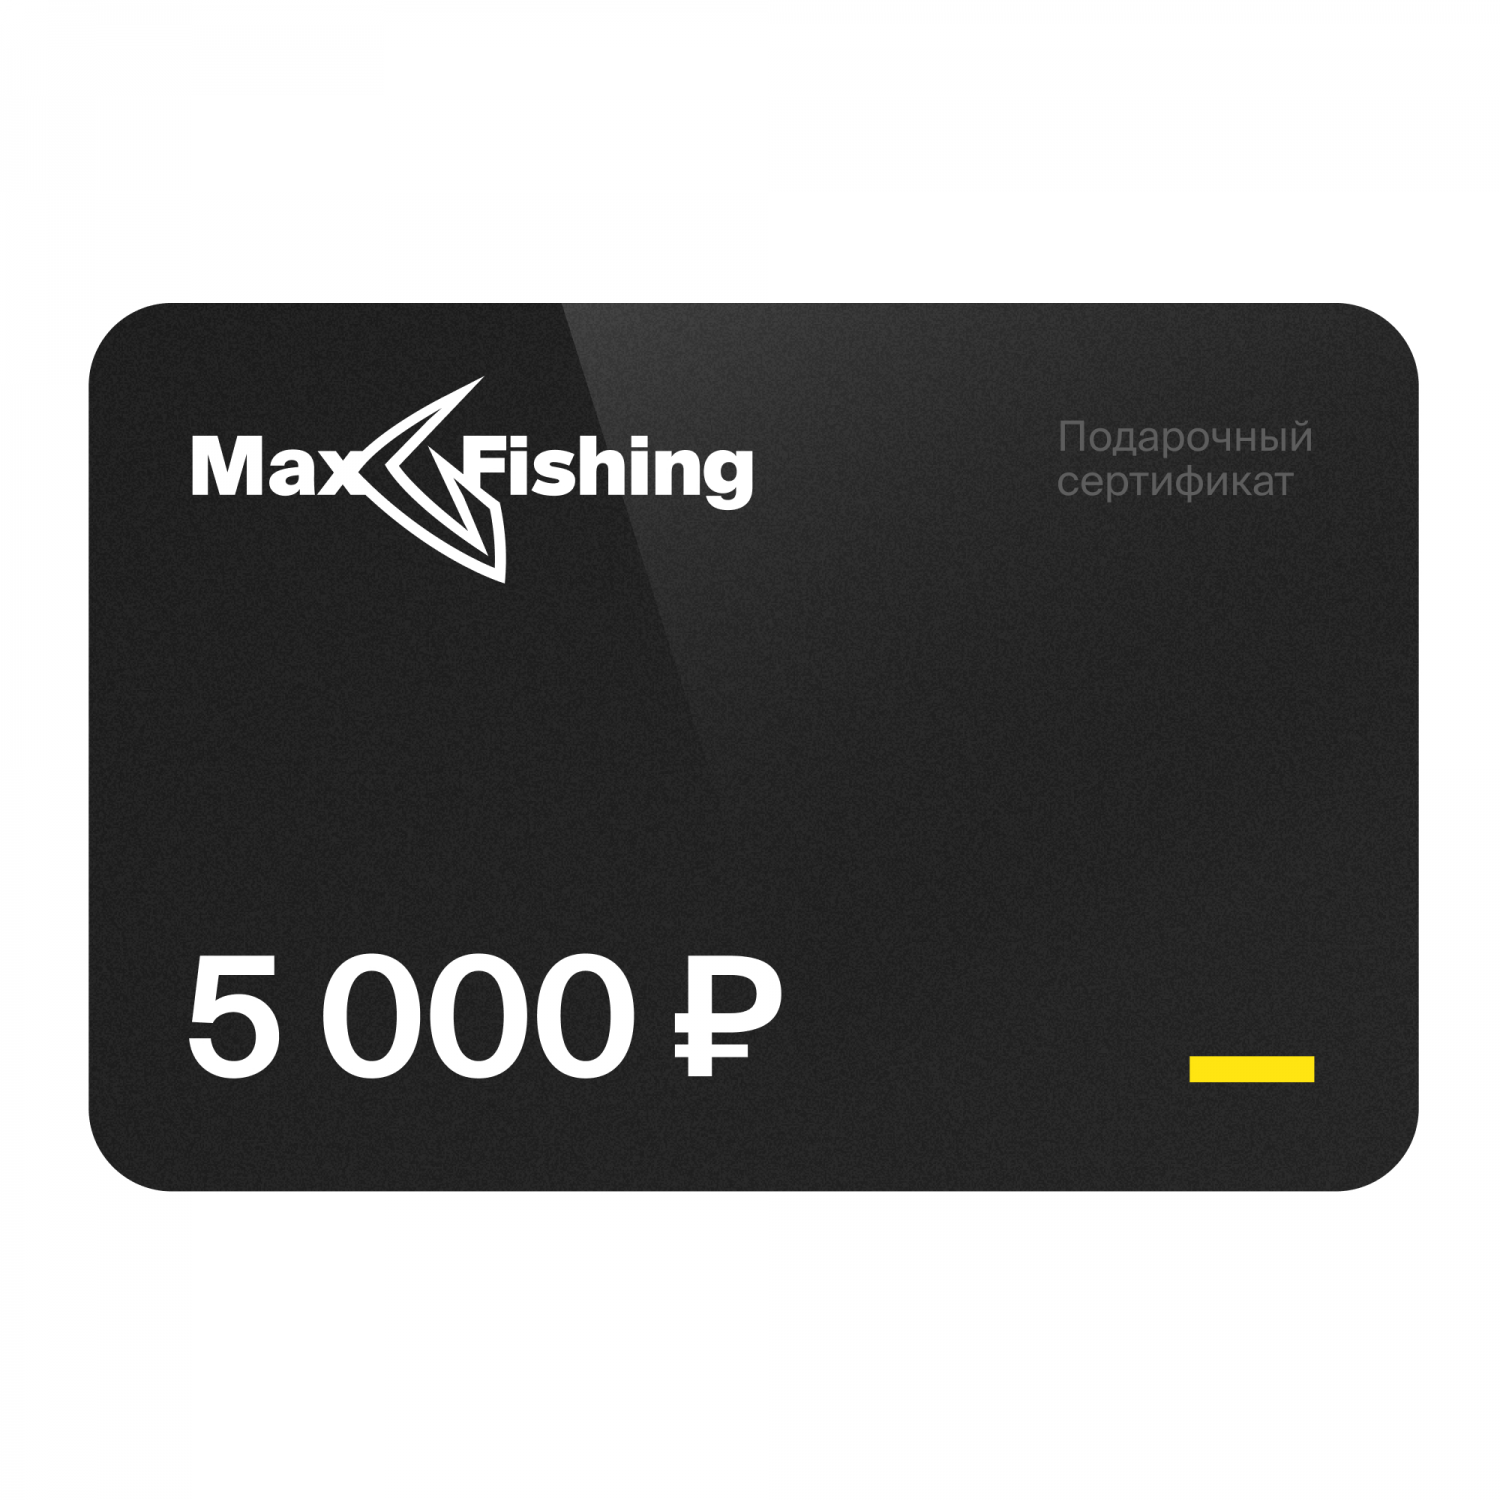 Подарочный сертификат MaxFishing 5 000 ₽ подарочный сертификат maxfishing 20